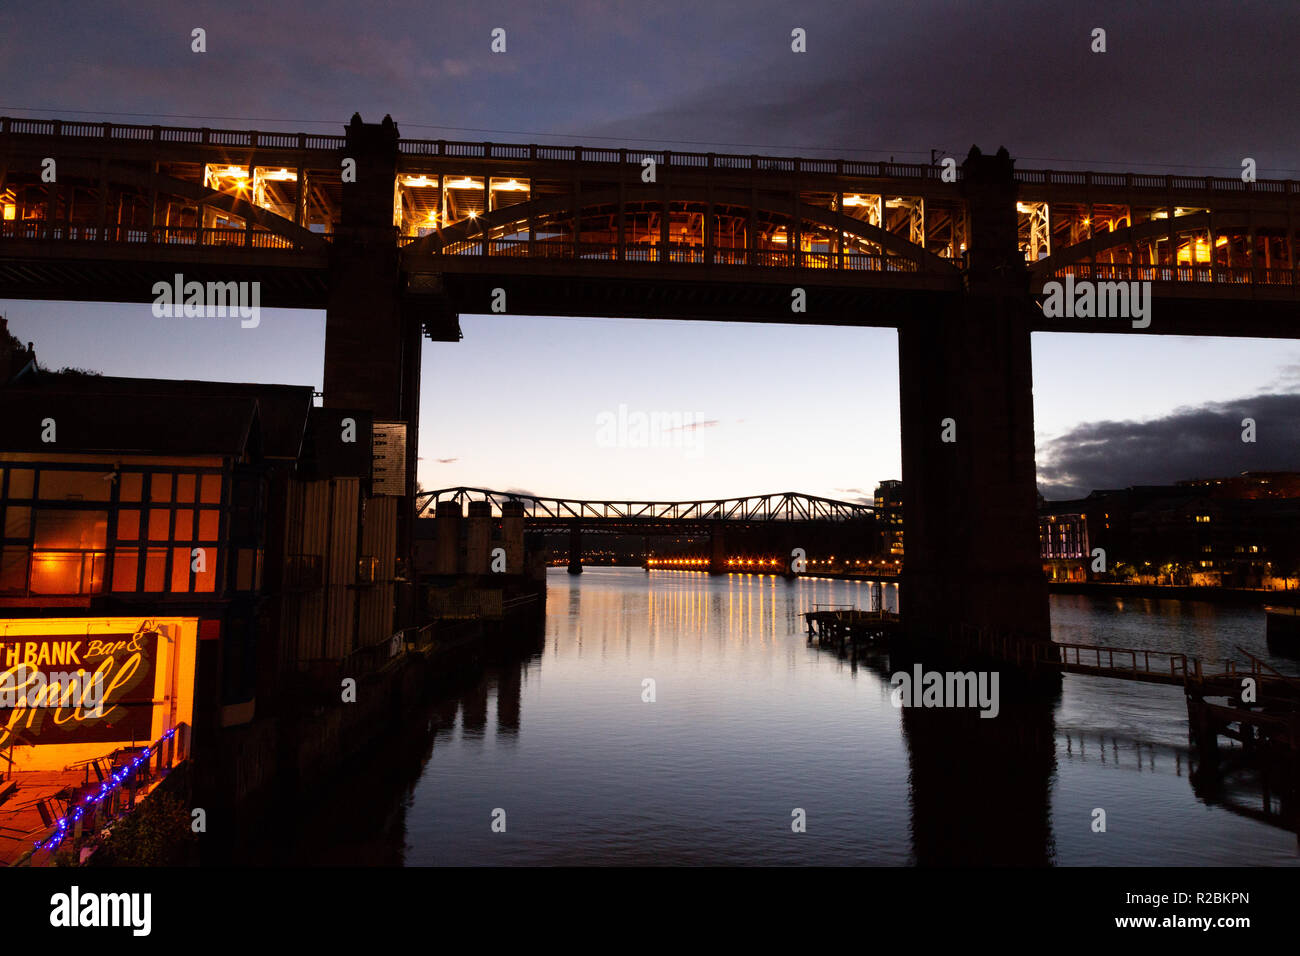 Newcastle sur Tyne/France - 10 octobre 2014 : Crépuscule sur la Tyne, High Level Bridge at night Banque D'Images